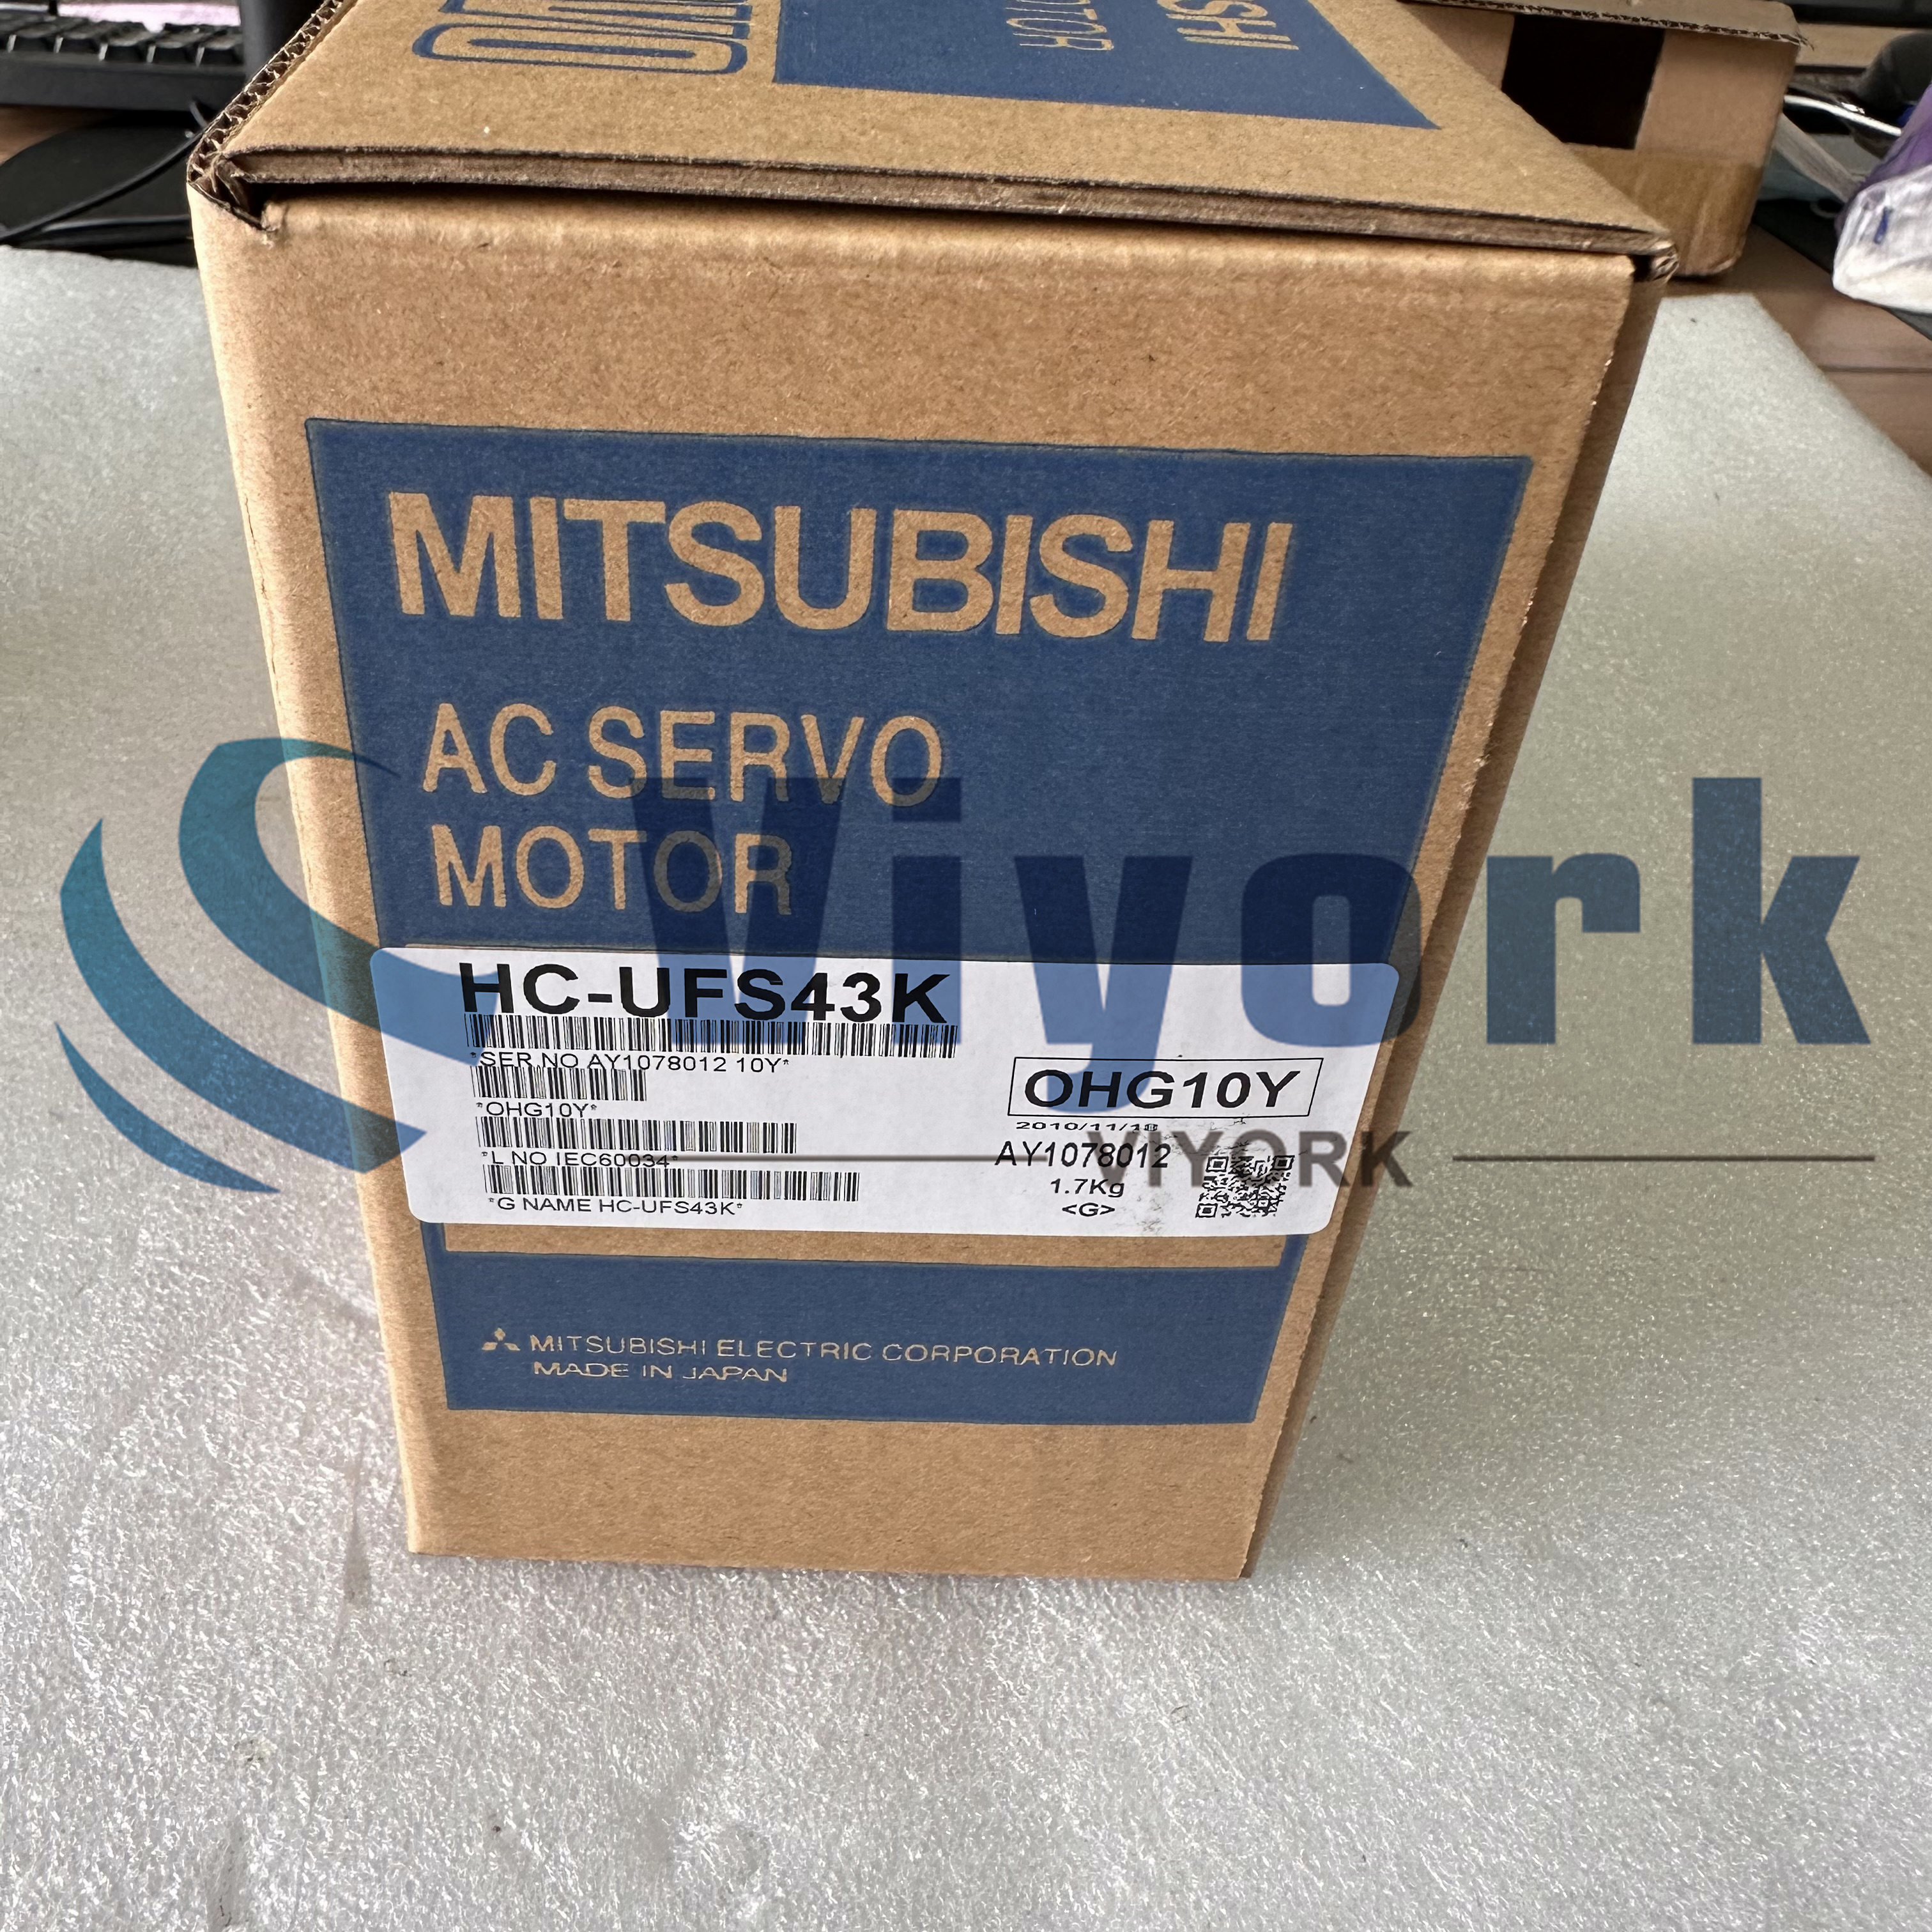 Mitsubishi HC-UFS43K AC SERVO MOTOR 0.4KW 3000RPM 400WATT NEW